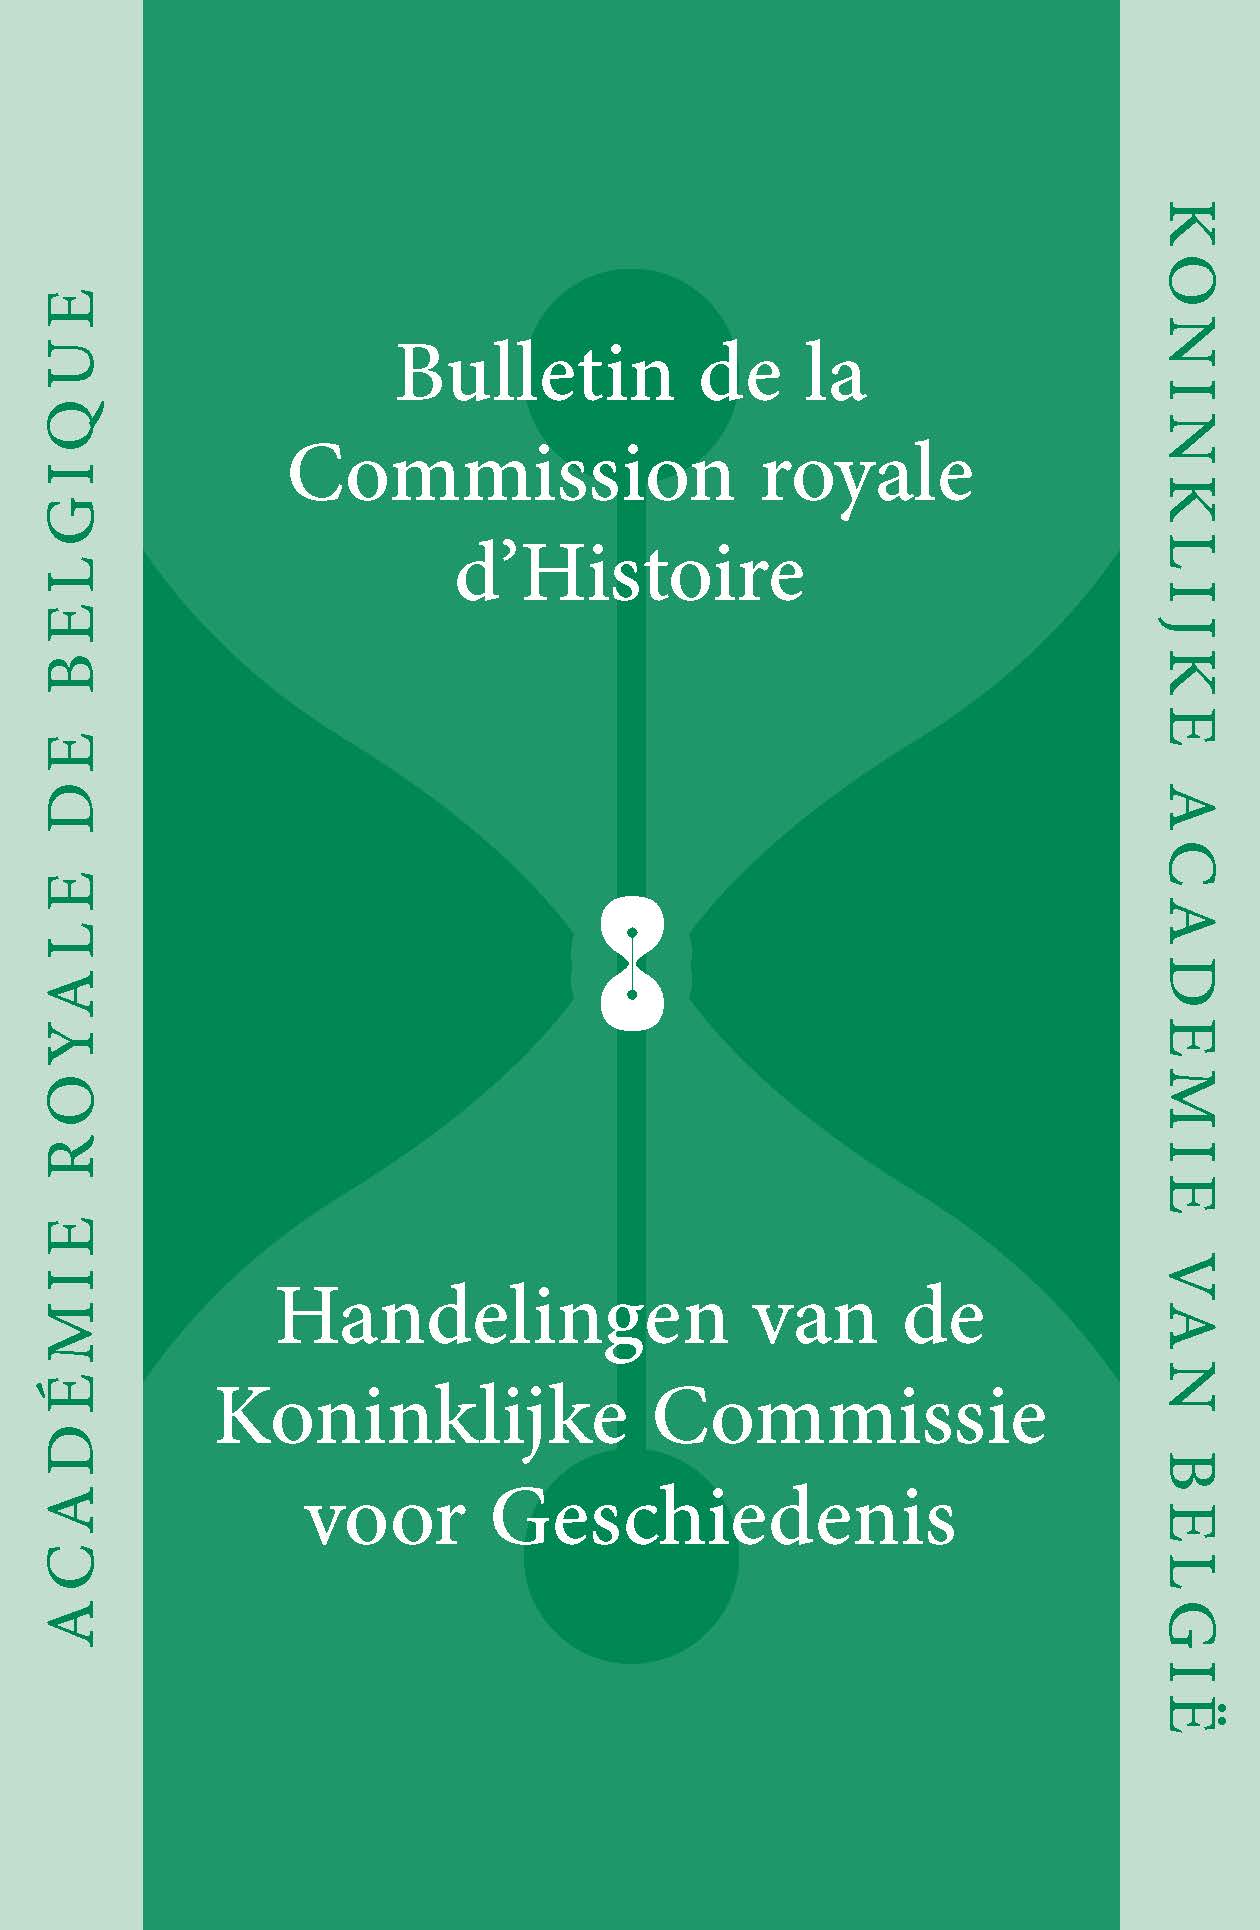 HANDELINGEN VAN DE KONINKLIJKE COMMISSIE VOOR GESCHIEDENIS/BULLETIN, VOL. 186, 2020 (kcg)